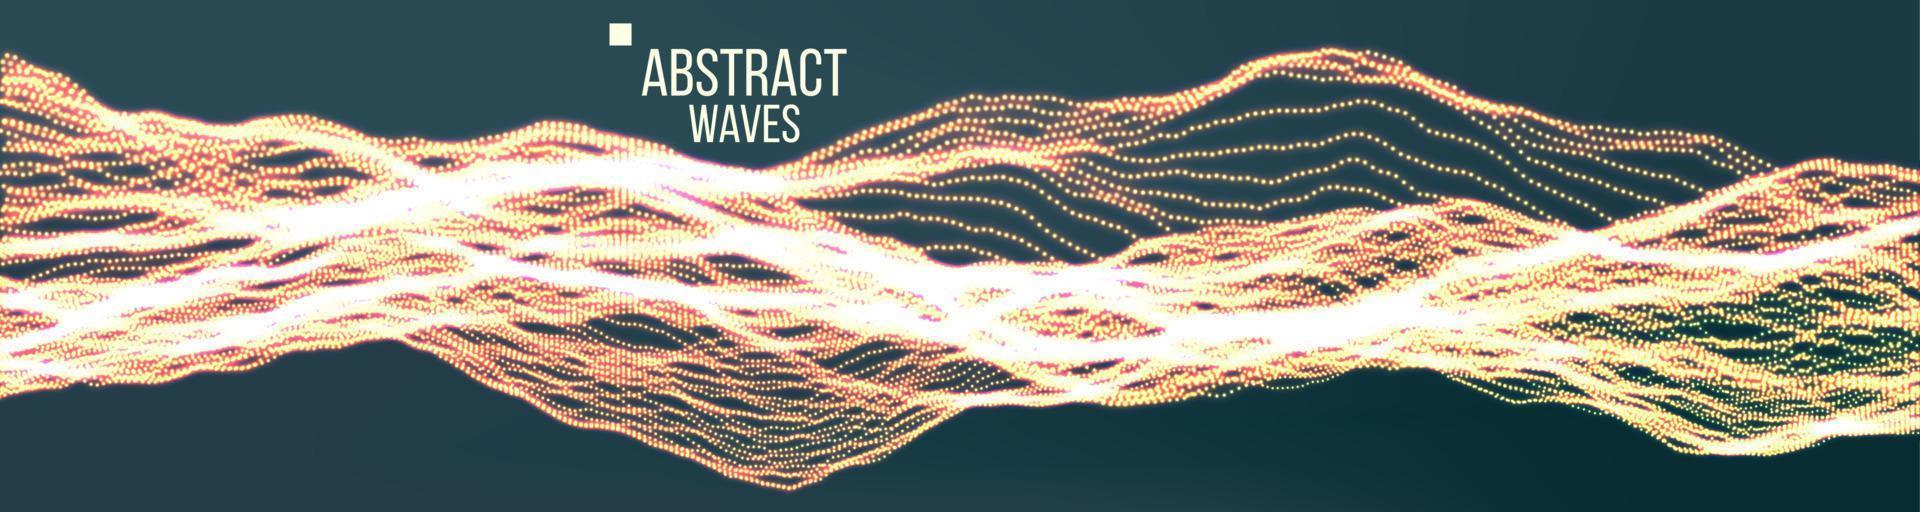 muziek- golven abstract geluid achtergrond vector. pont dans golfvorm. cyber veiligheid. illustratie vector